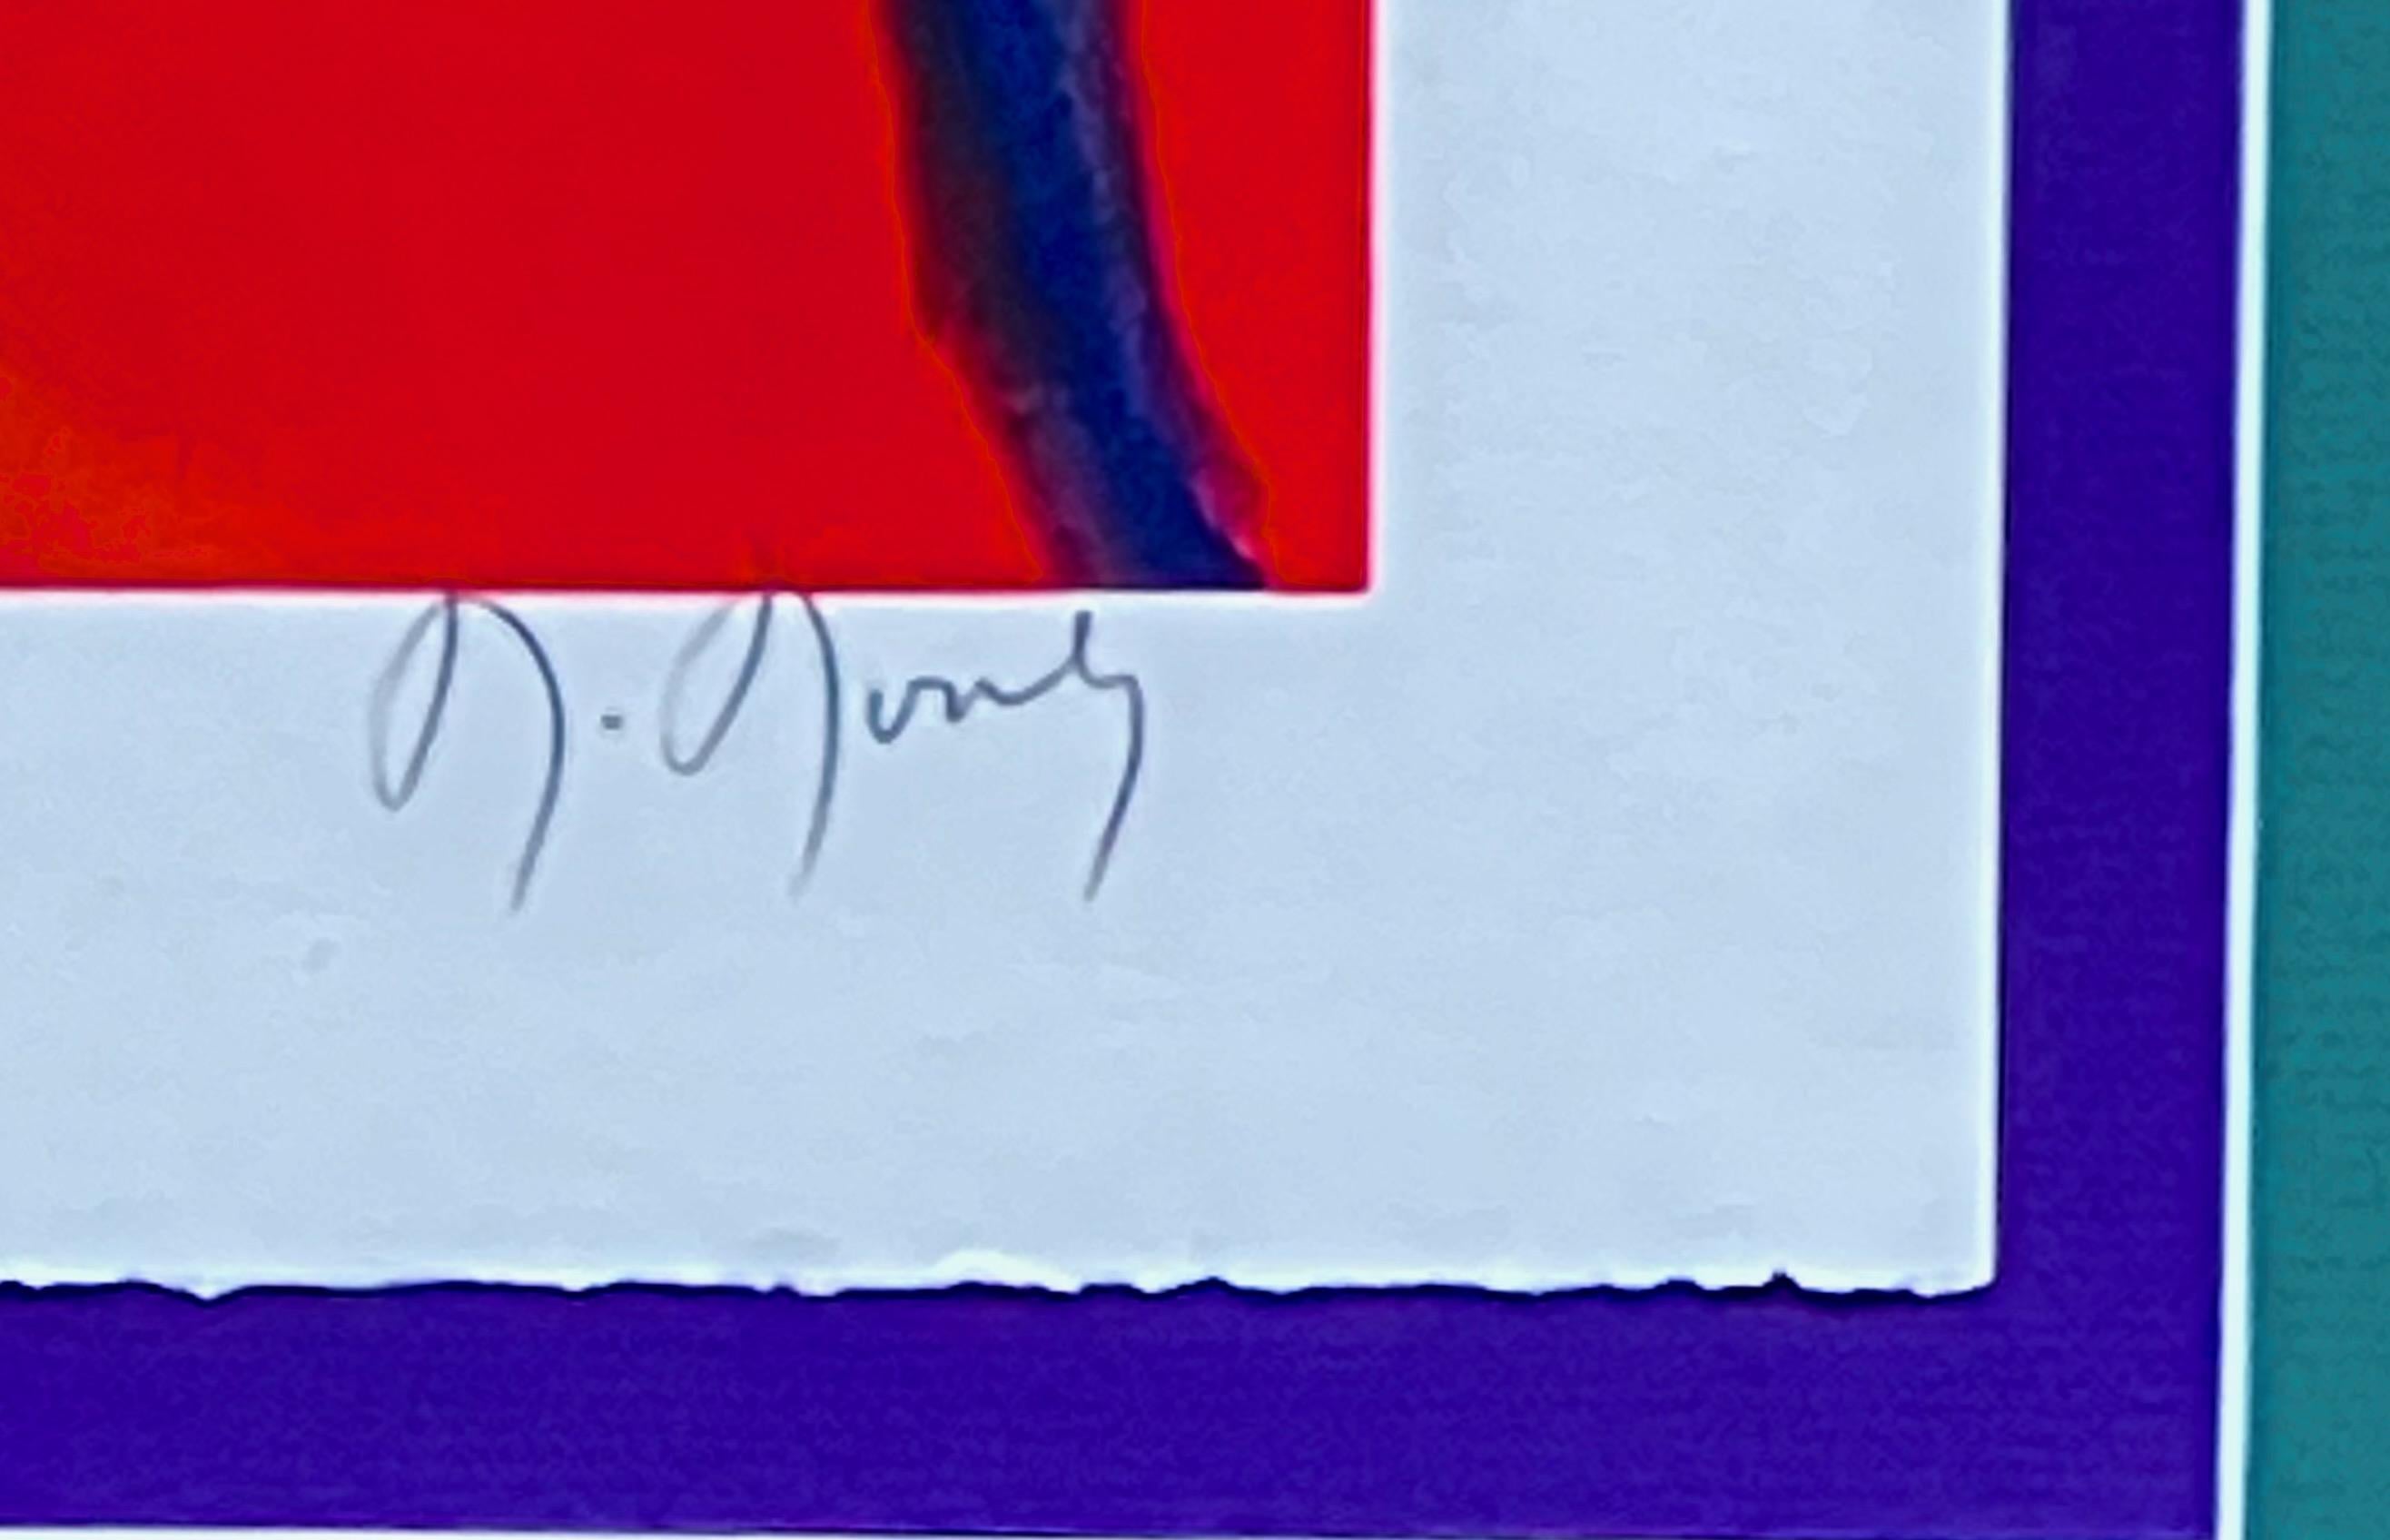 Artistics : Marcel Mouly - Français (1918 - 2008)
Titre : Petit Luberon II
Année : 2003
Médium : Lithographie
Taille de l'image : 27.5 x 19.25 pouces
Taille de la feuille : 30.5 x 22.25 pouces
Taille du cadre : 39.75 x 31.5 pouces
Signature : Signée